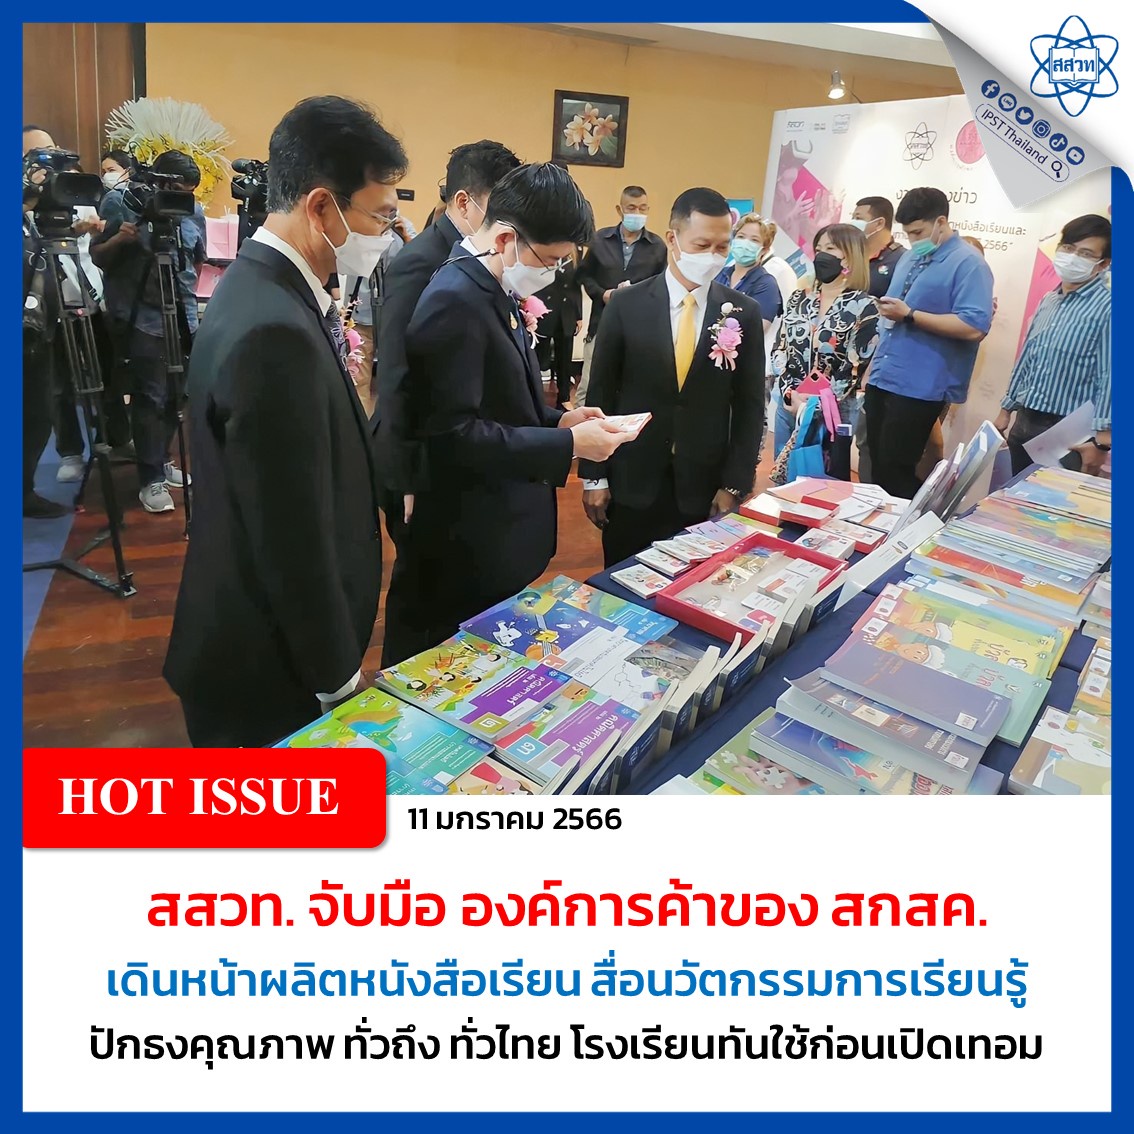 สสวท. จับมือ องค์การค้าของ สกสค. เดินหน้าผลิตหนังสือเรียน สื่อนวัตกรรมการเรียนรู้ ปักธงคุณภาพ ทั่วถึง ทั่วไทย